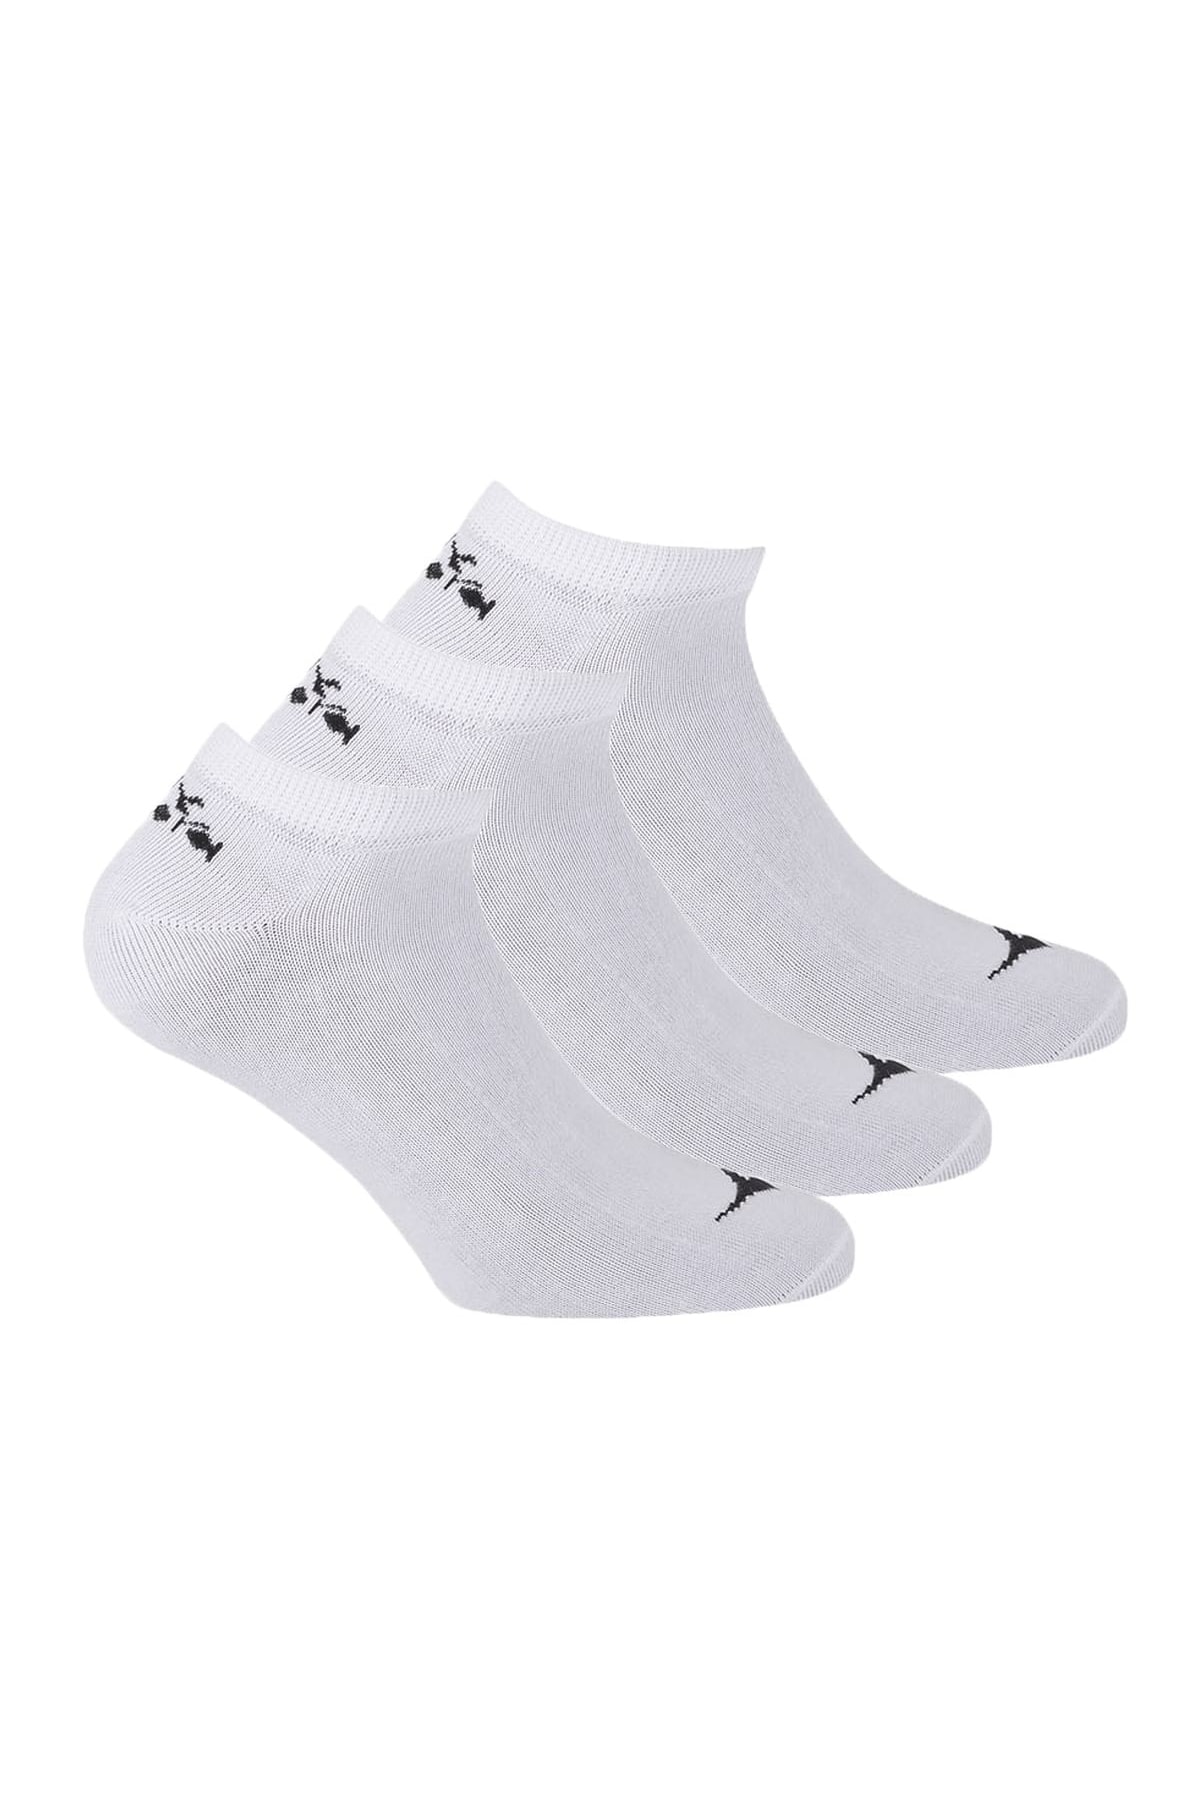 Diadora Socken Weiß Casual Fast ausverkauft